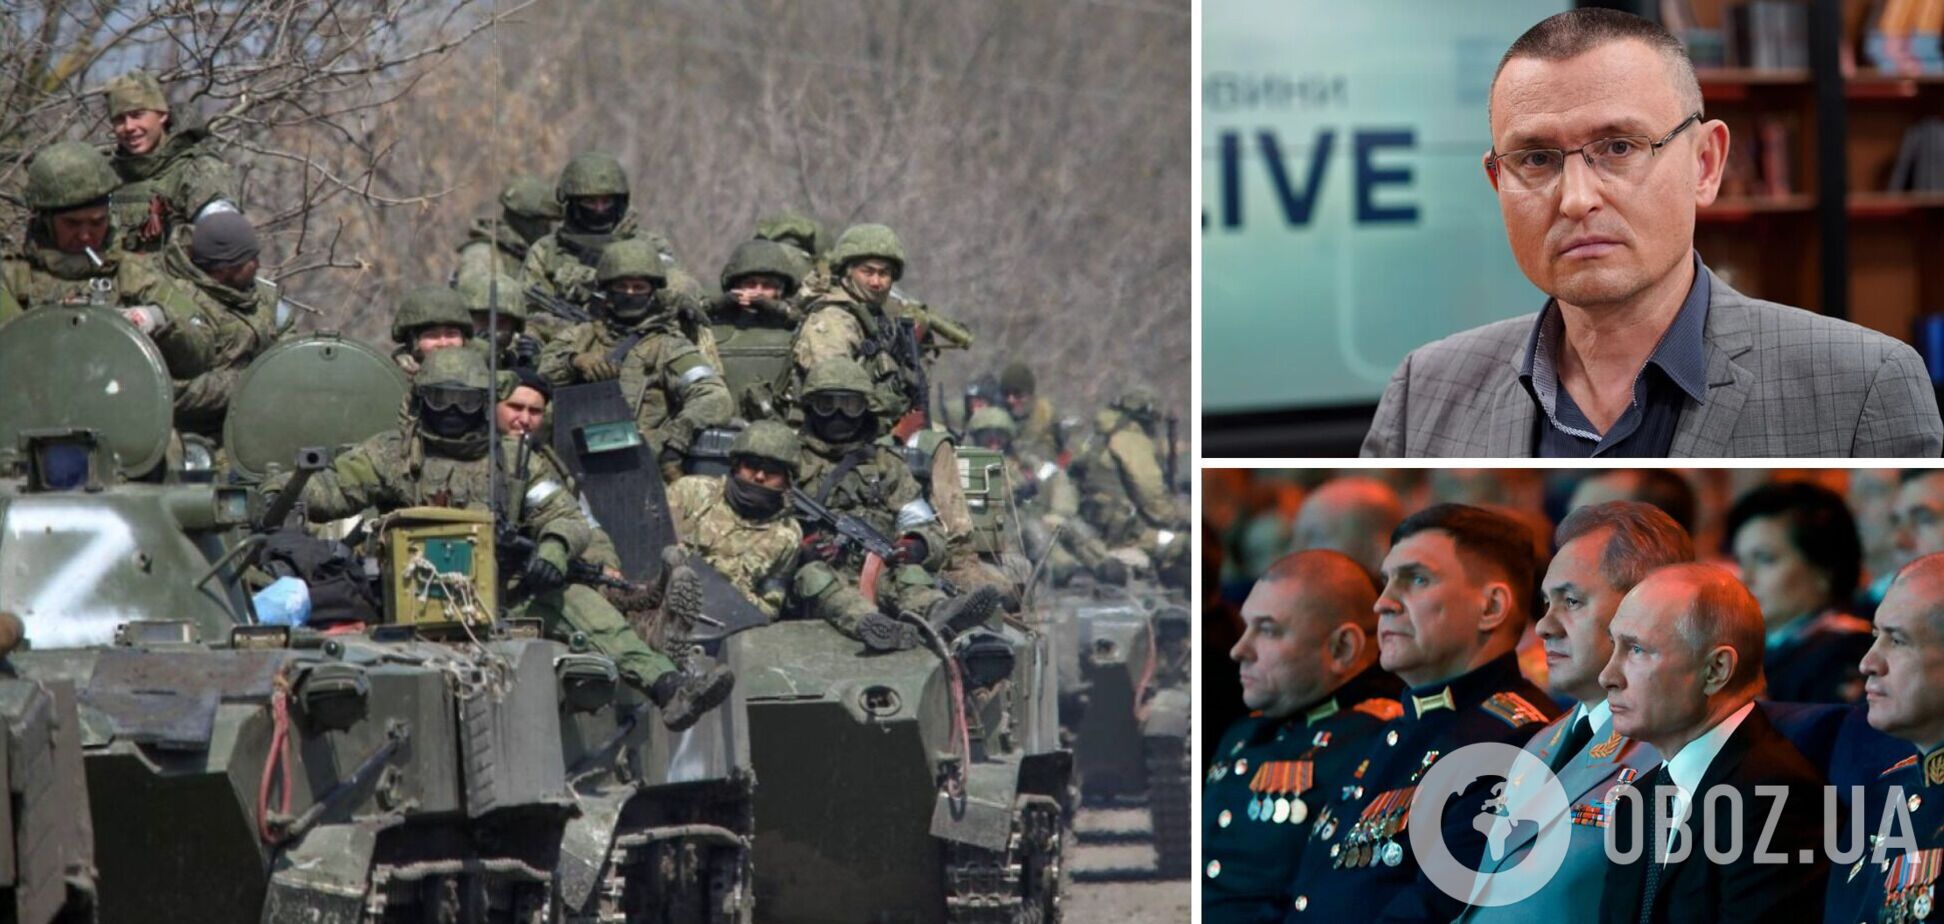 Селезнев: российское наступление еще не захлебнулось, есть тенденция к обострению. Интервью